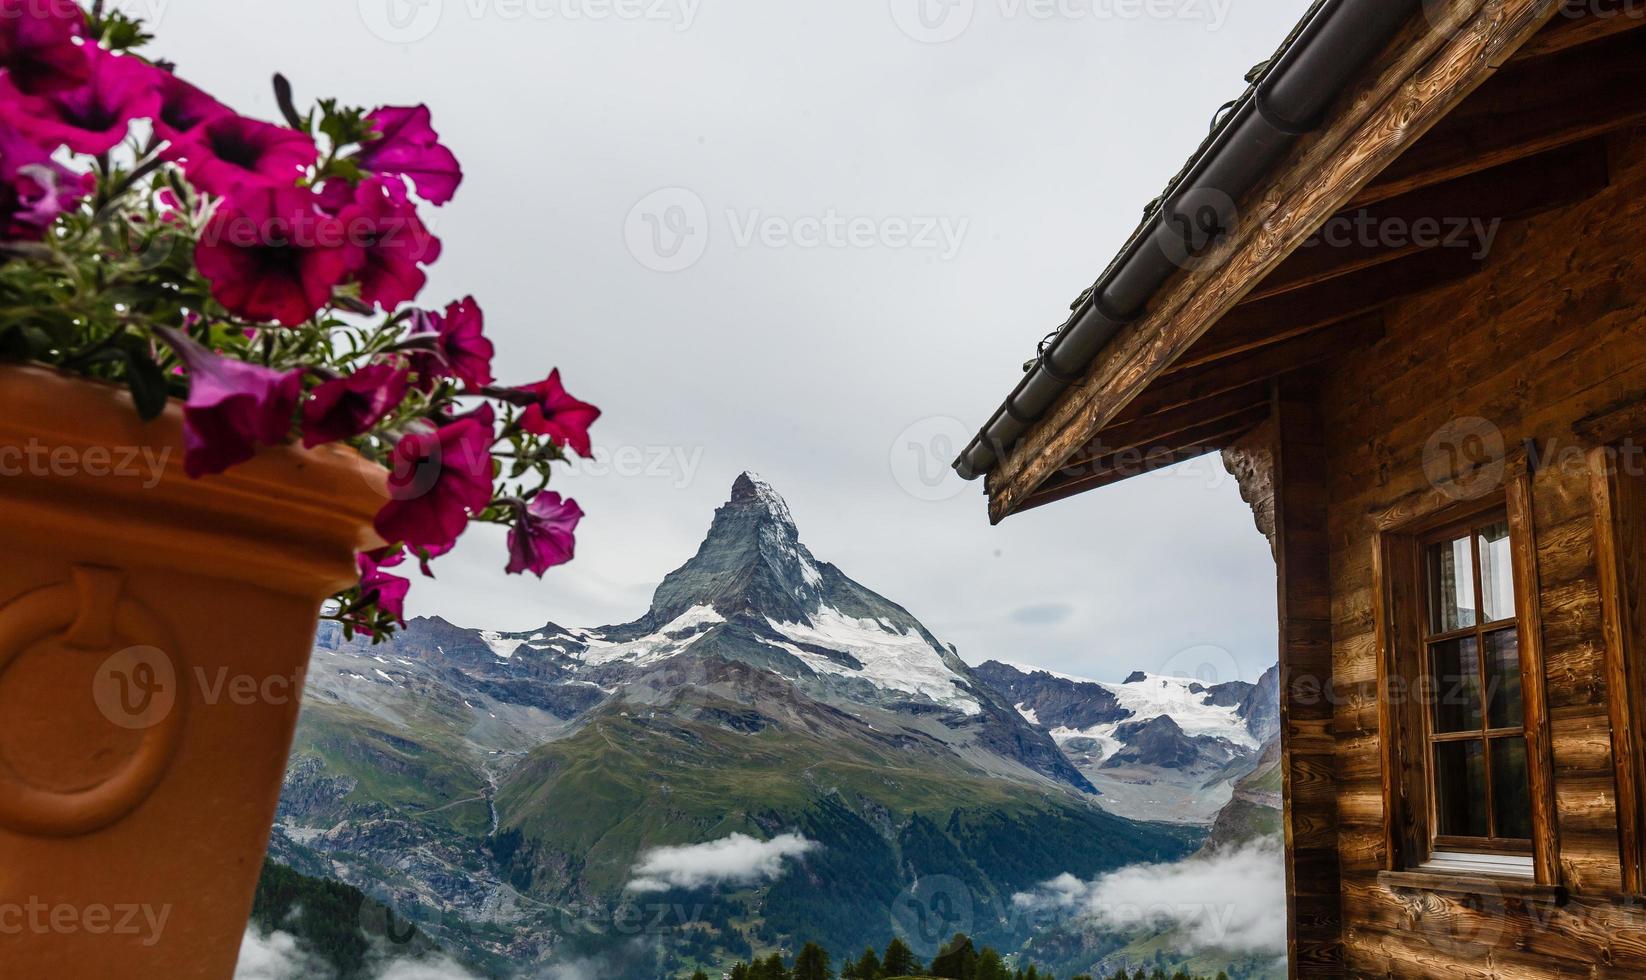 wandelen in de Zwitsers Alpen met bloem veld- en de matterhorn top in de achtergrond. foto